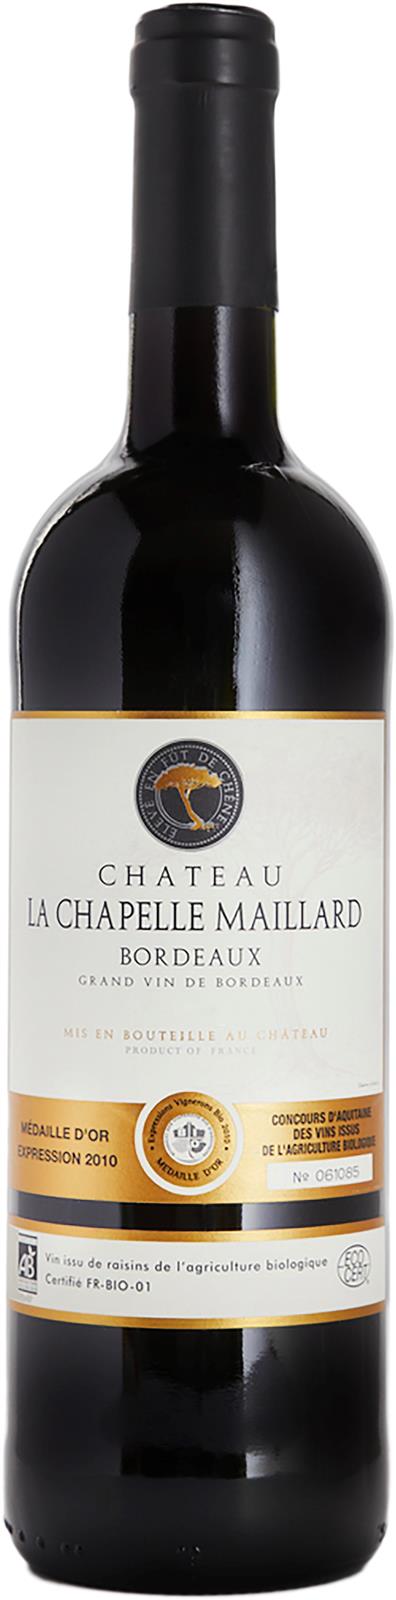 Château La Chapelle Maillard Bordeaux Rouge 2017 (France)